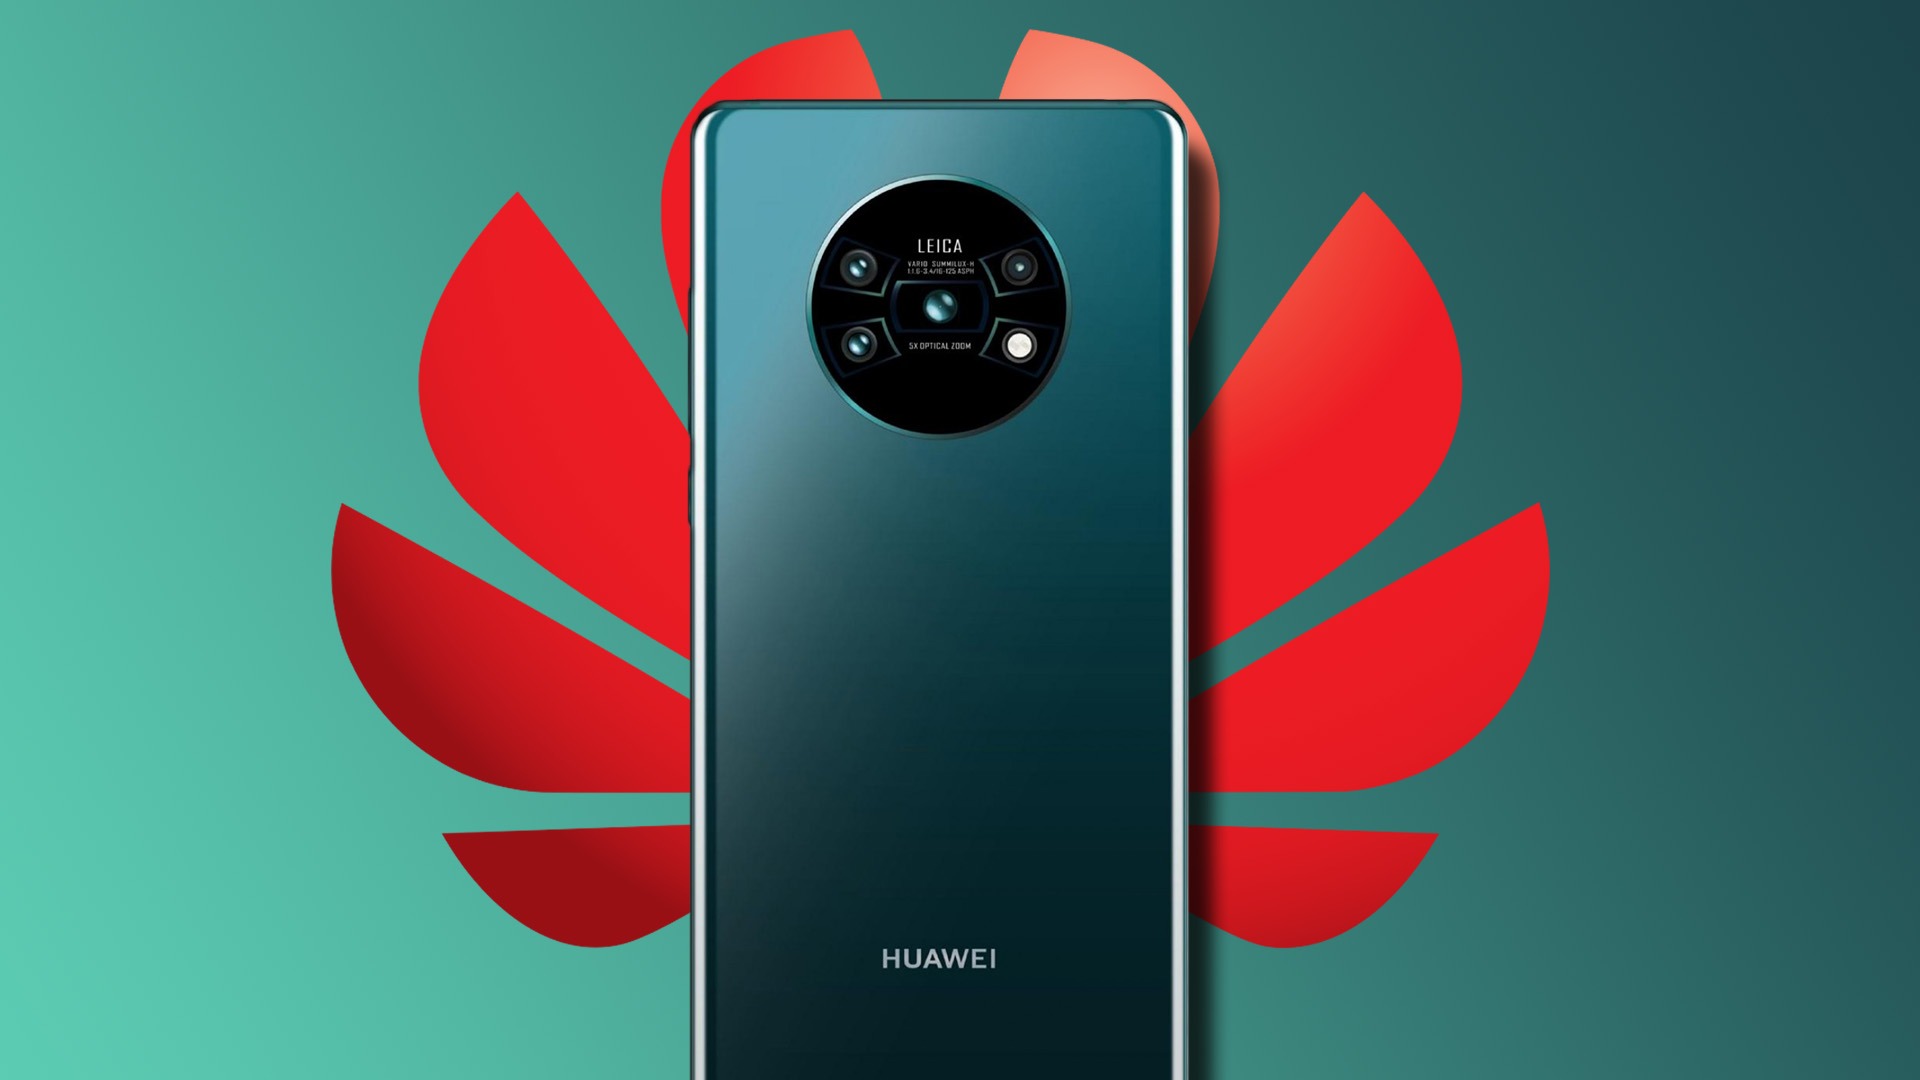 Doanh thu điện thoại của Huaweichỉ nắm giữ 4% thị phần trong quý 1 năm 2021.